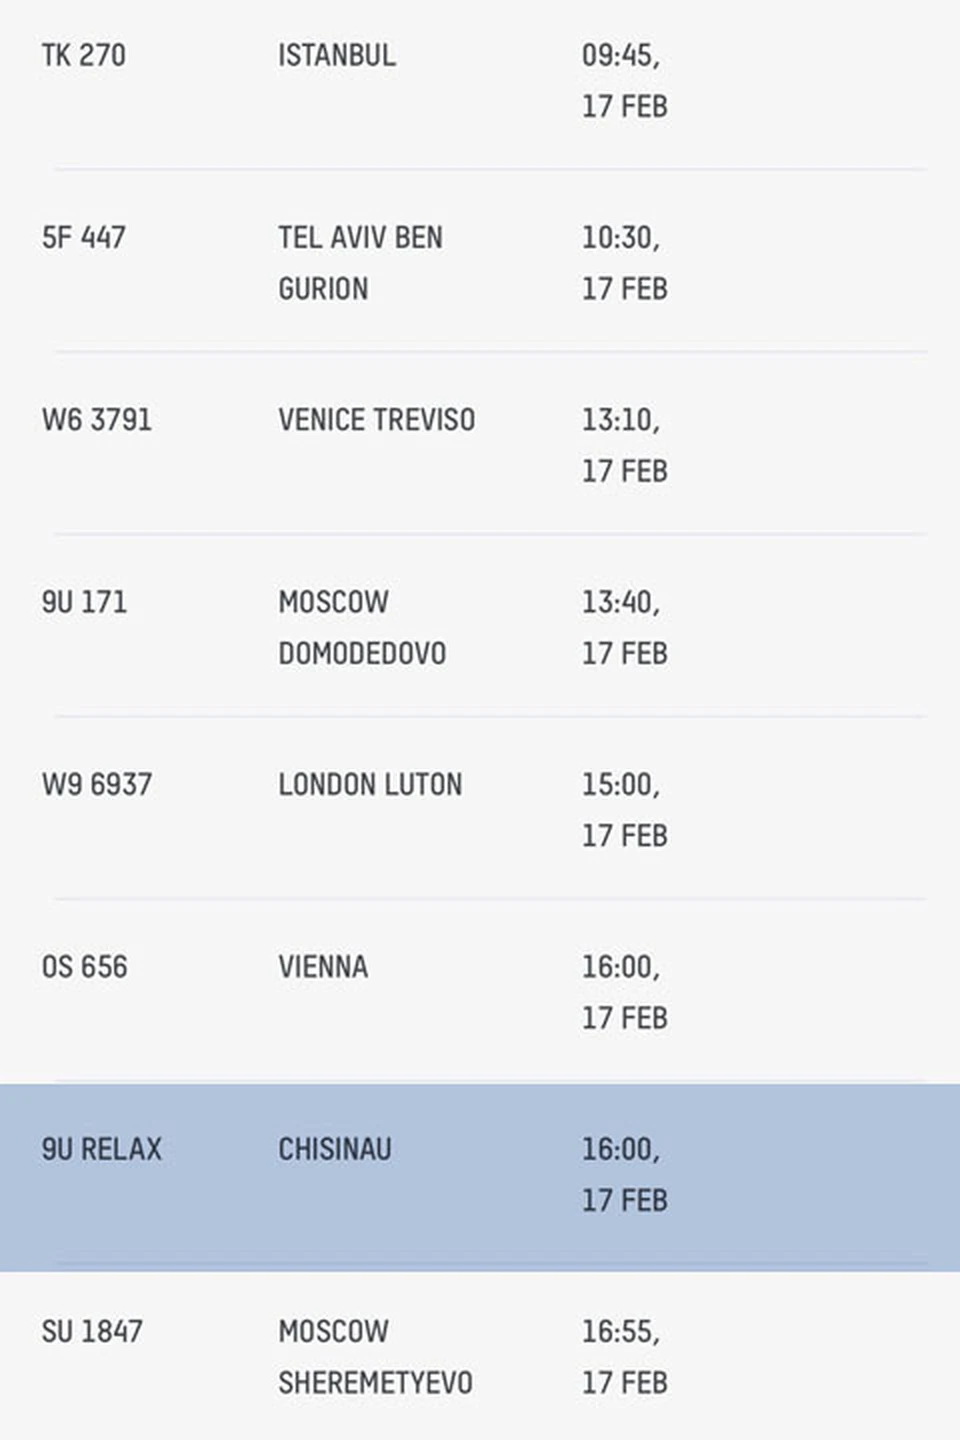 Cегодня на табло Кишиневского Международного аэропорта посетителями сайта был замечен необычный рейс 9U RELAX с направлением RELAX.